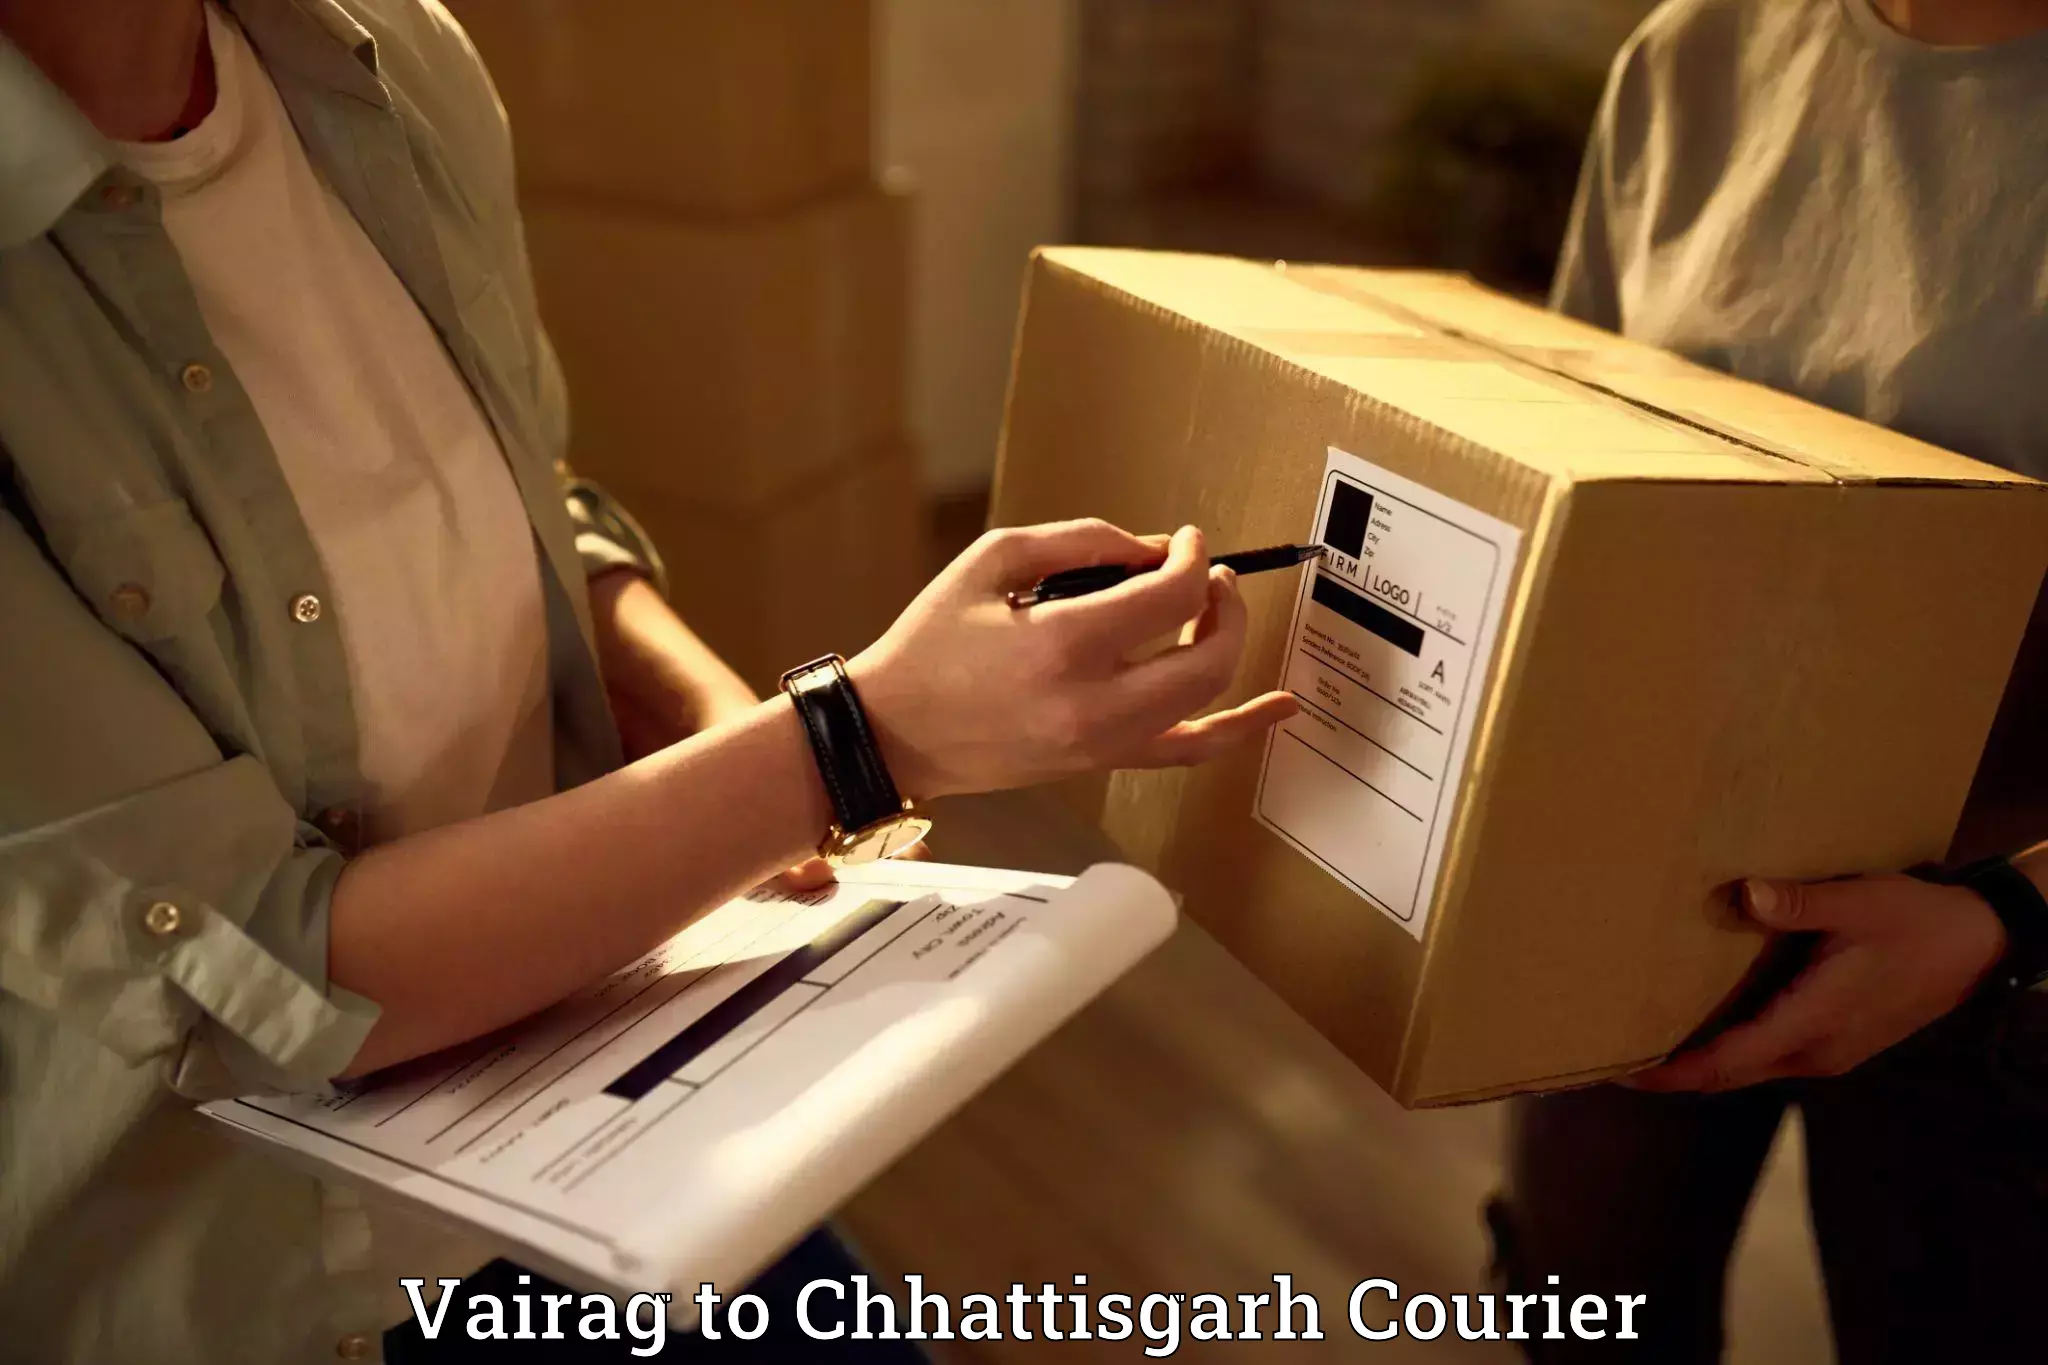 Furniture transport service Vairag to Pathalgaon